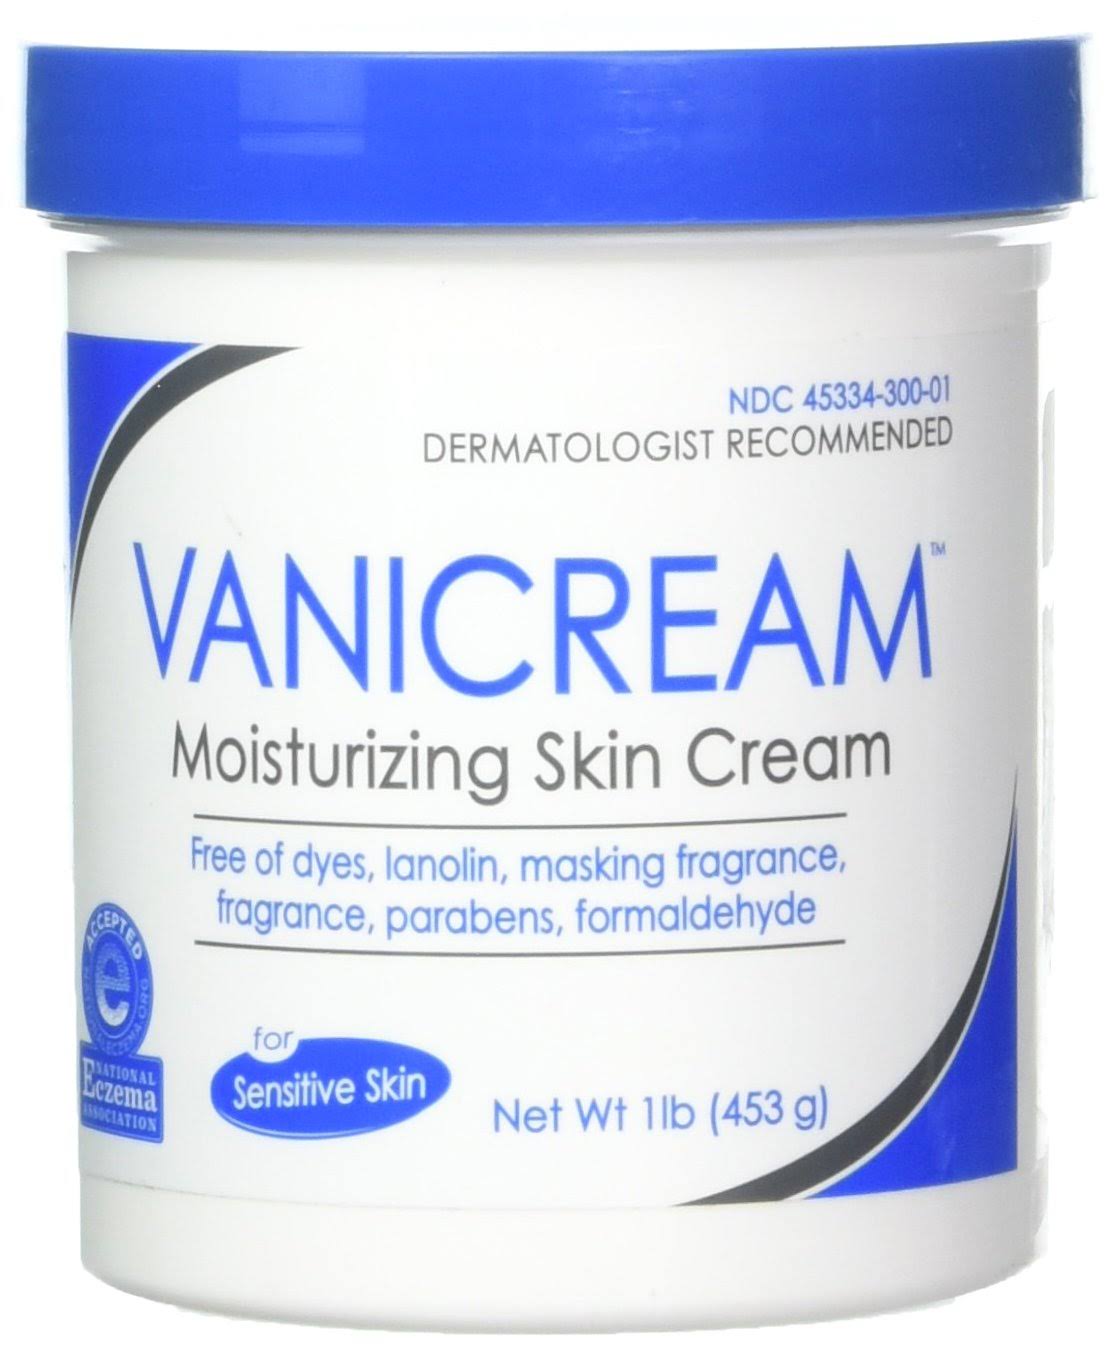 VaniCream Moisturizing Skin Cream - 453g